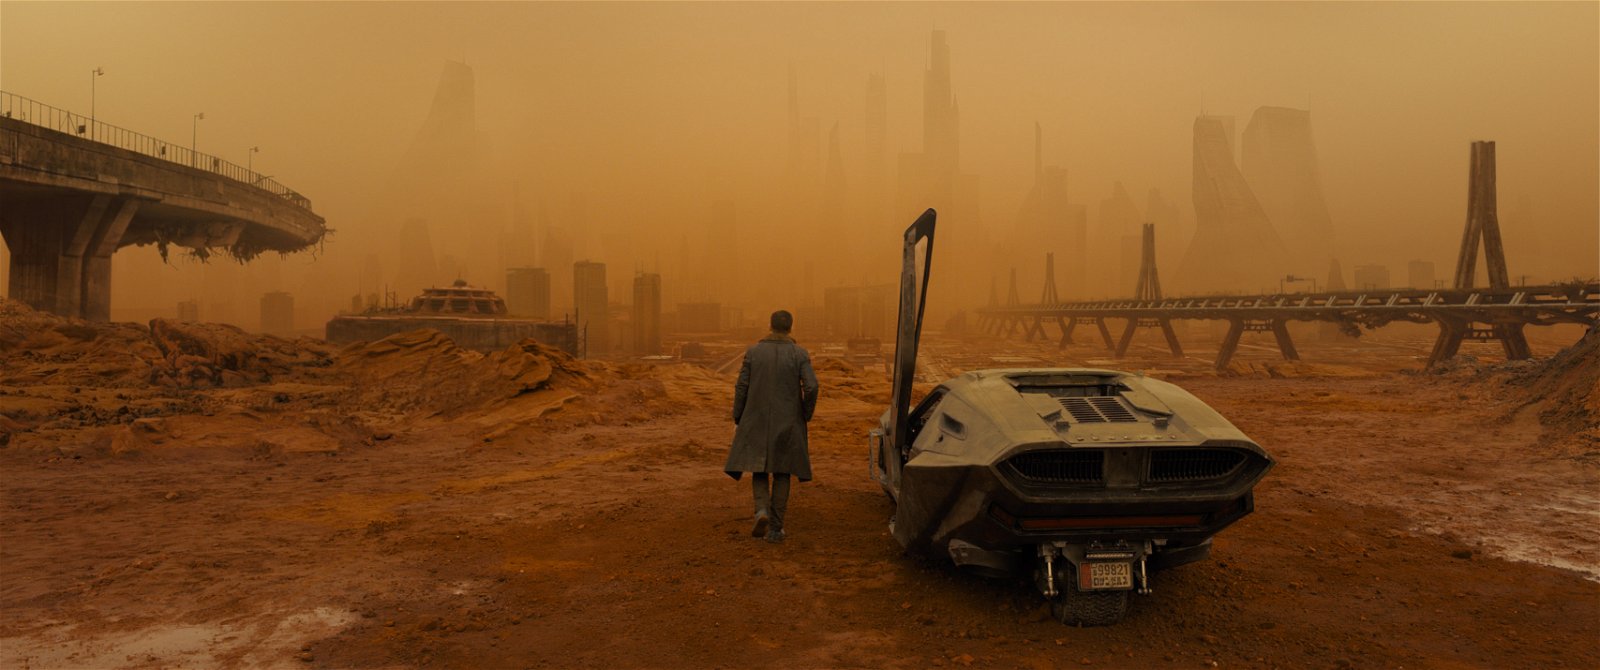 Kommer ”Blade Runner 2049” ge svar på vem Rick Deckard är?